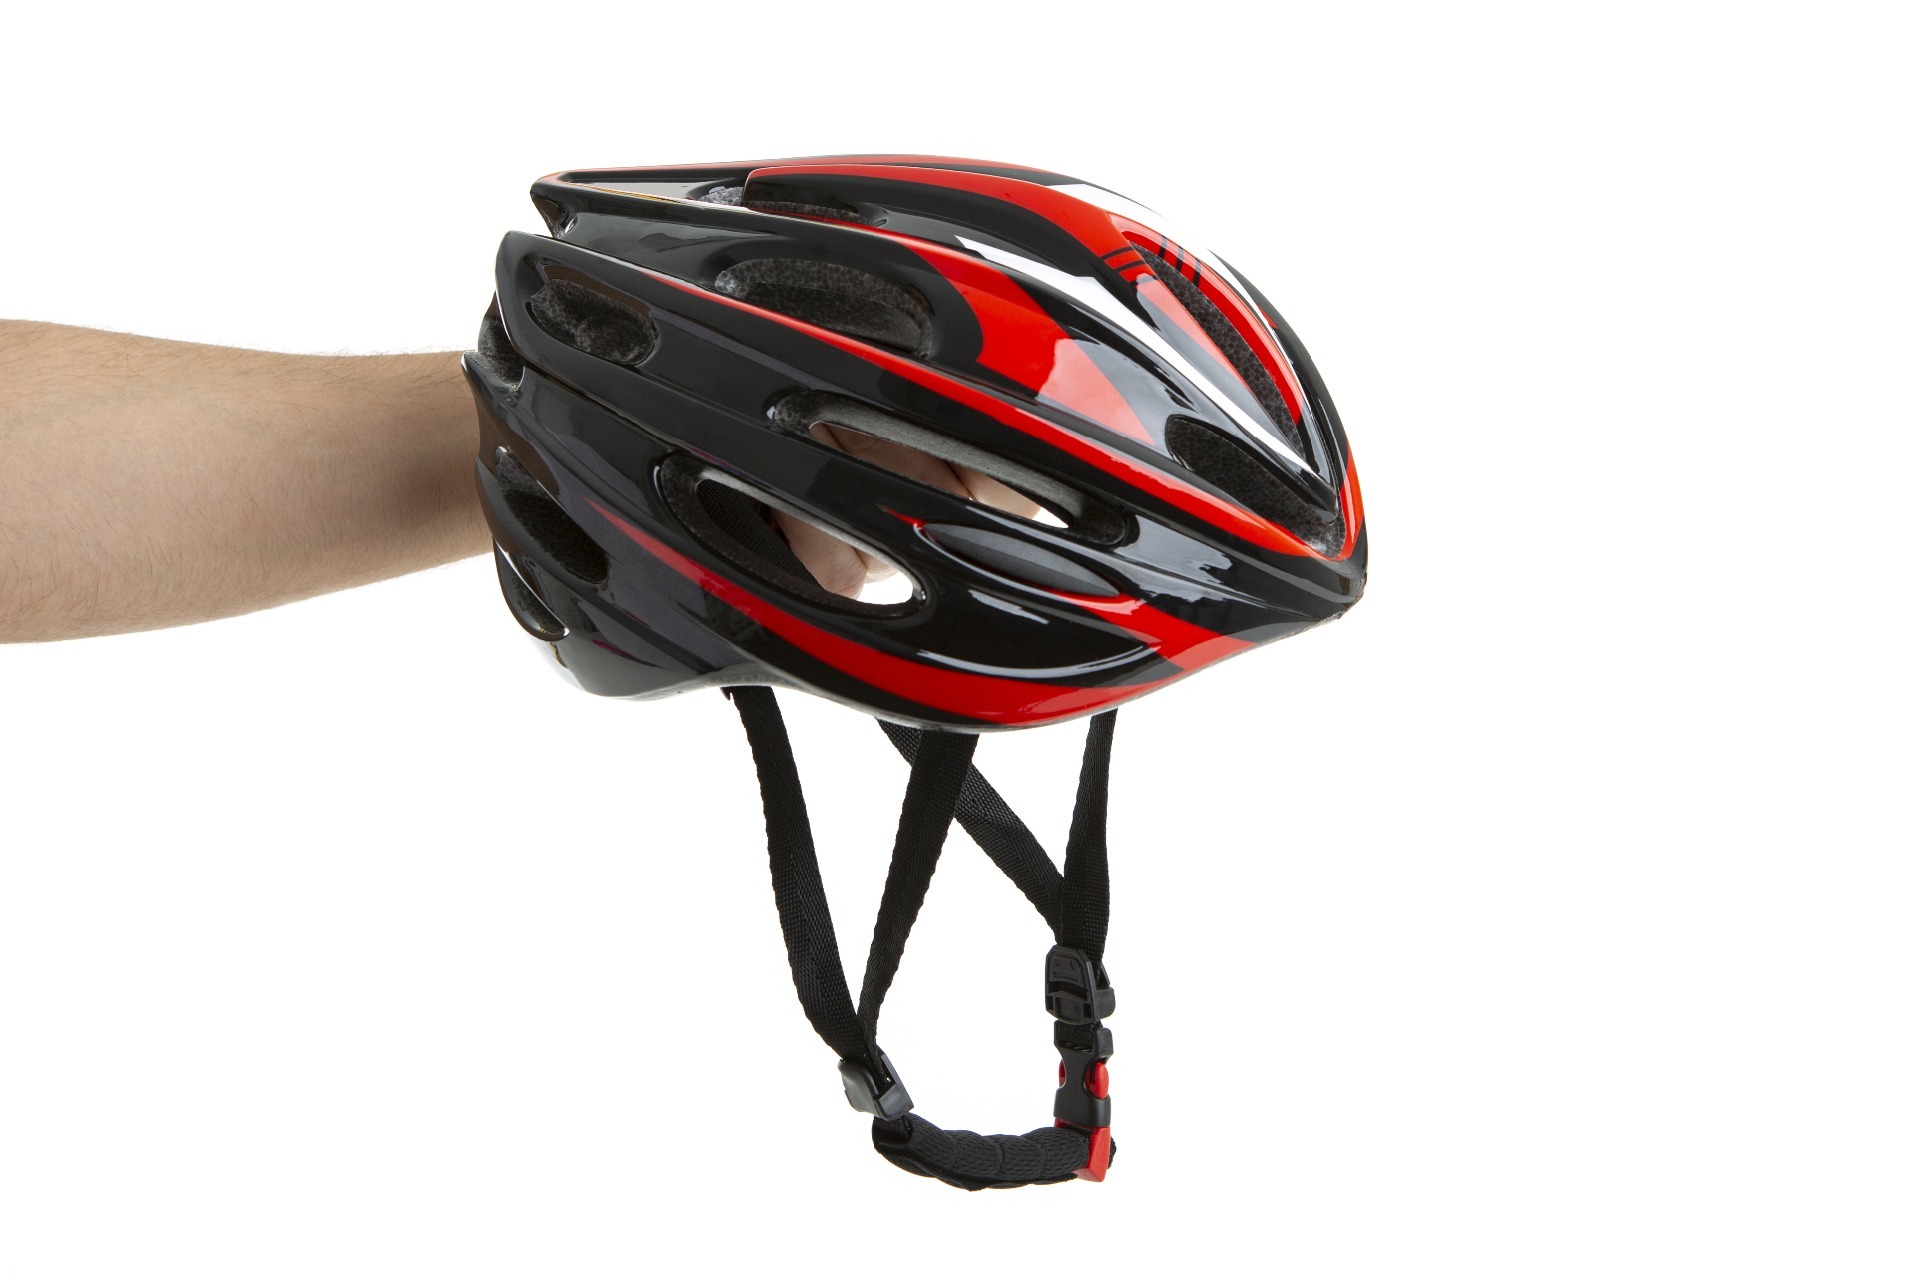 A bike helmet.